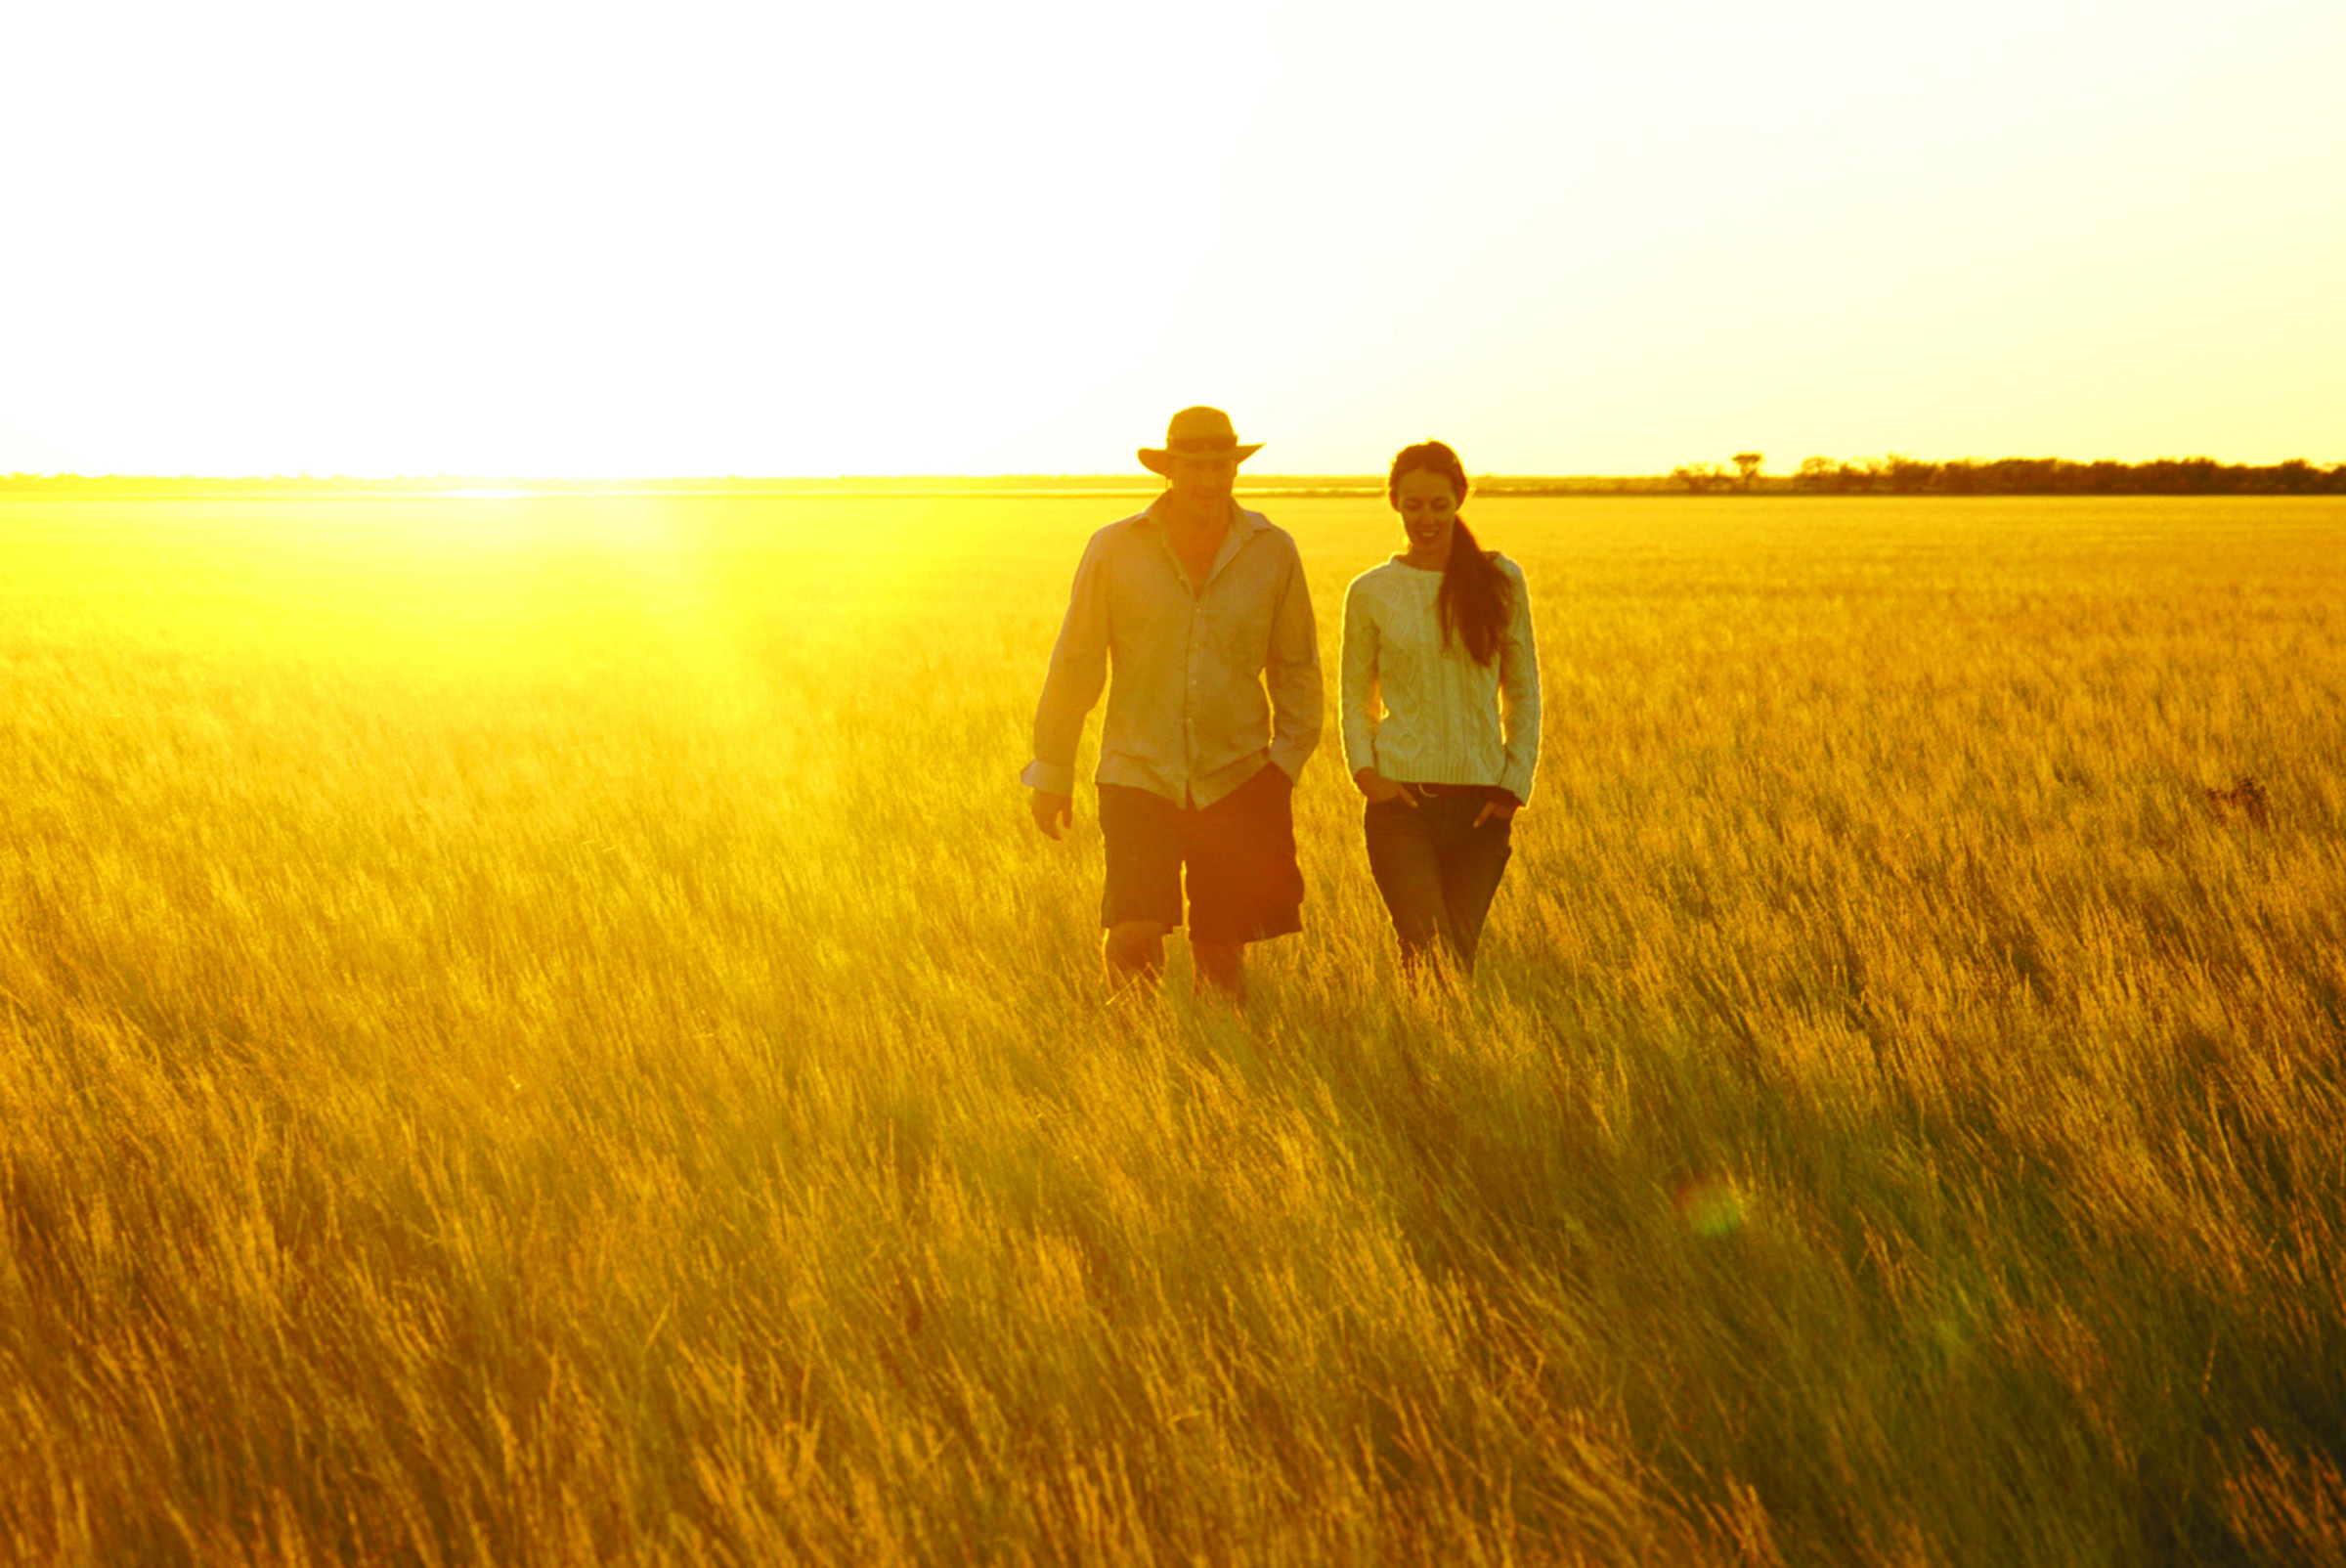 Two people walking in a field